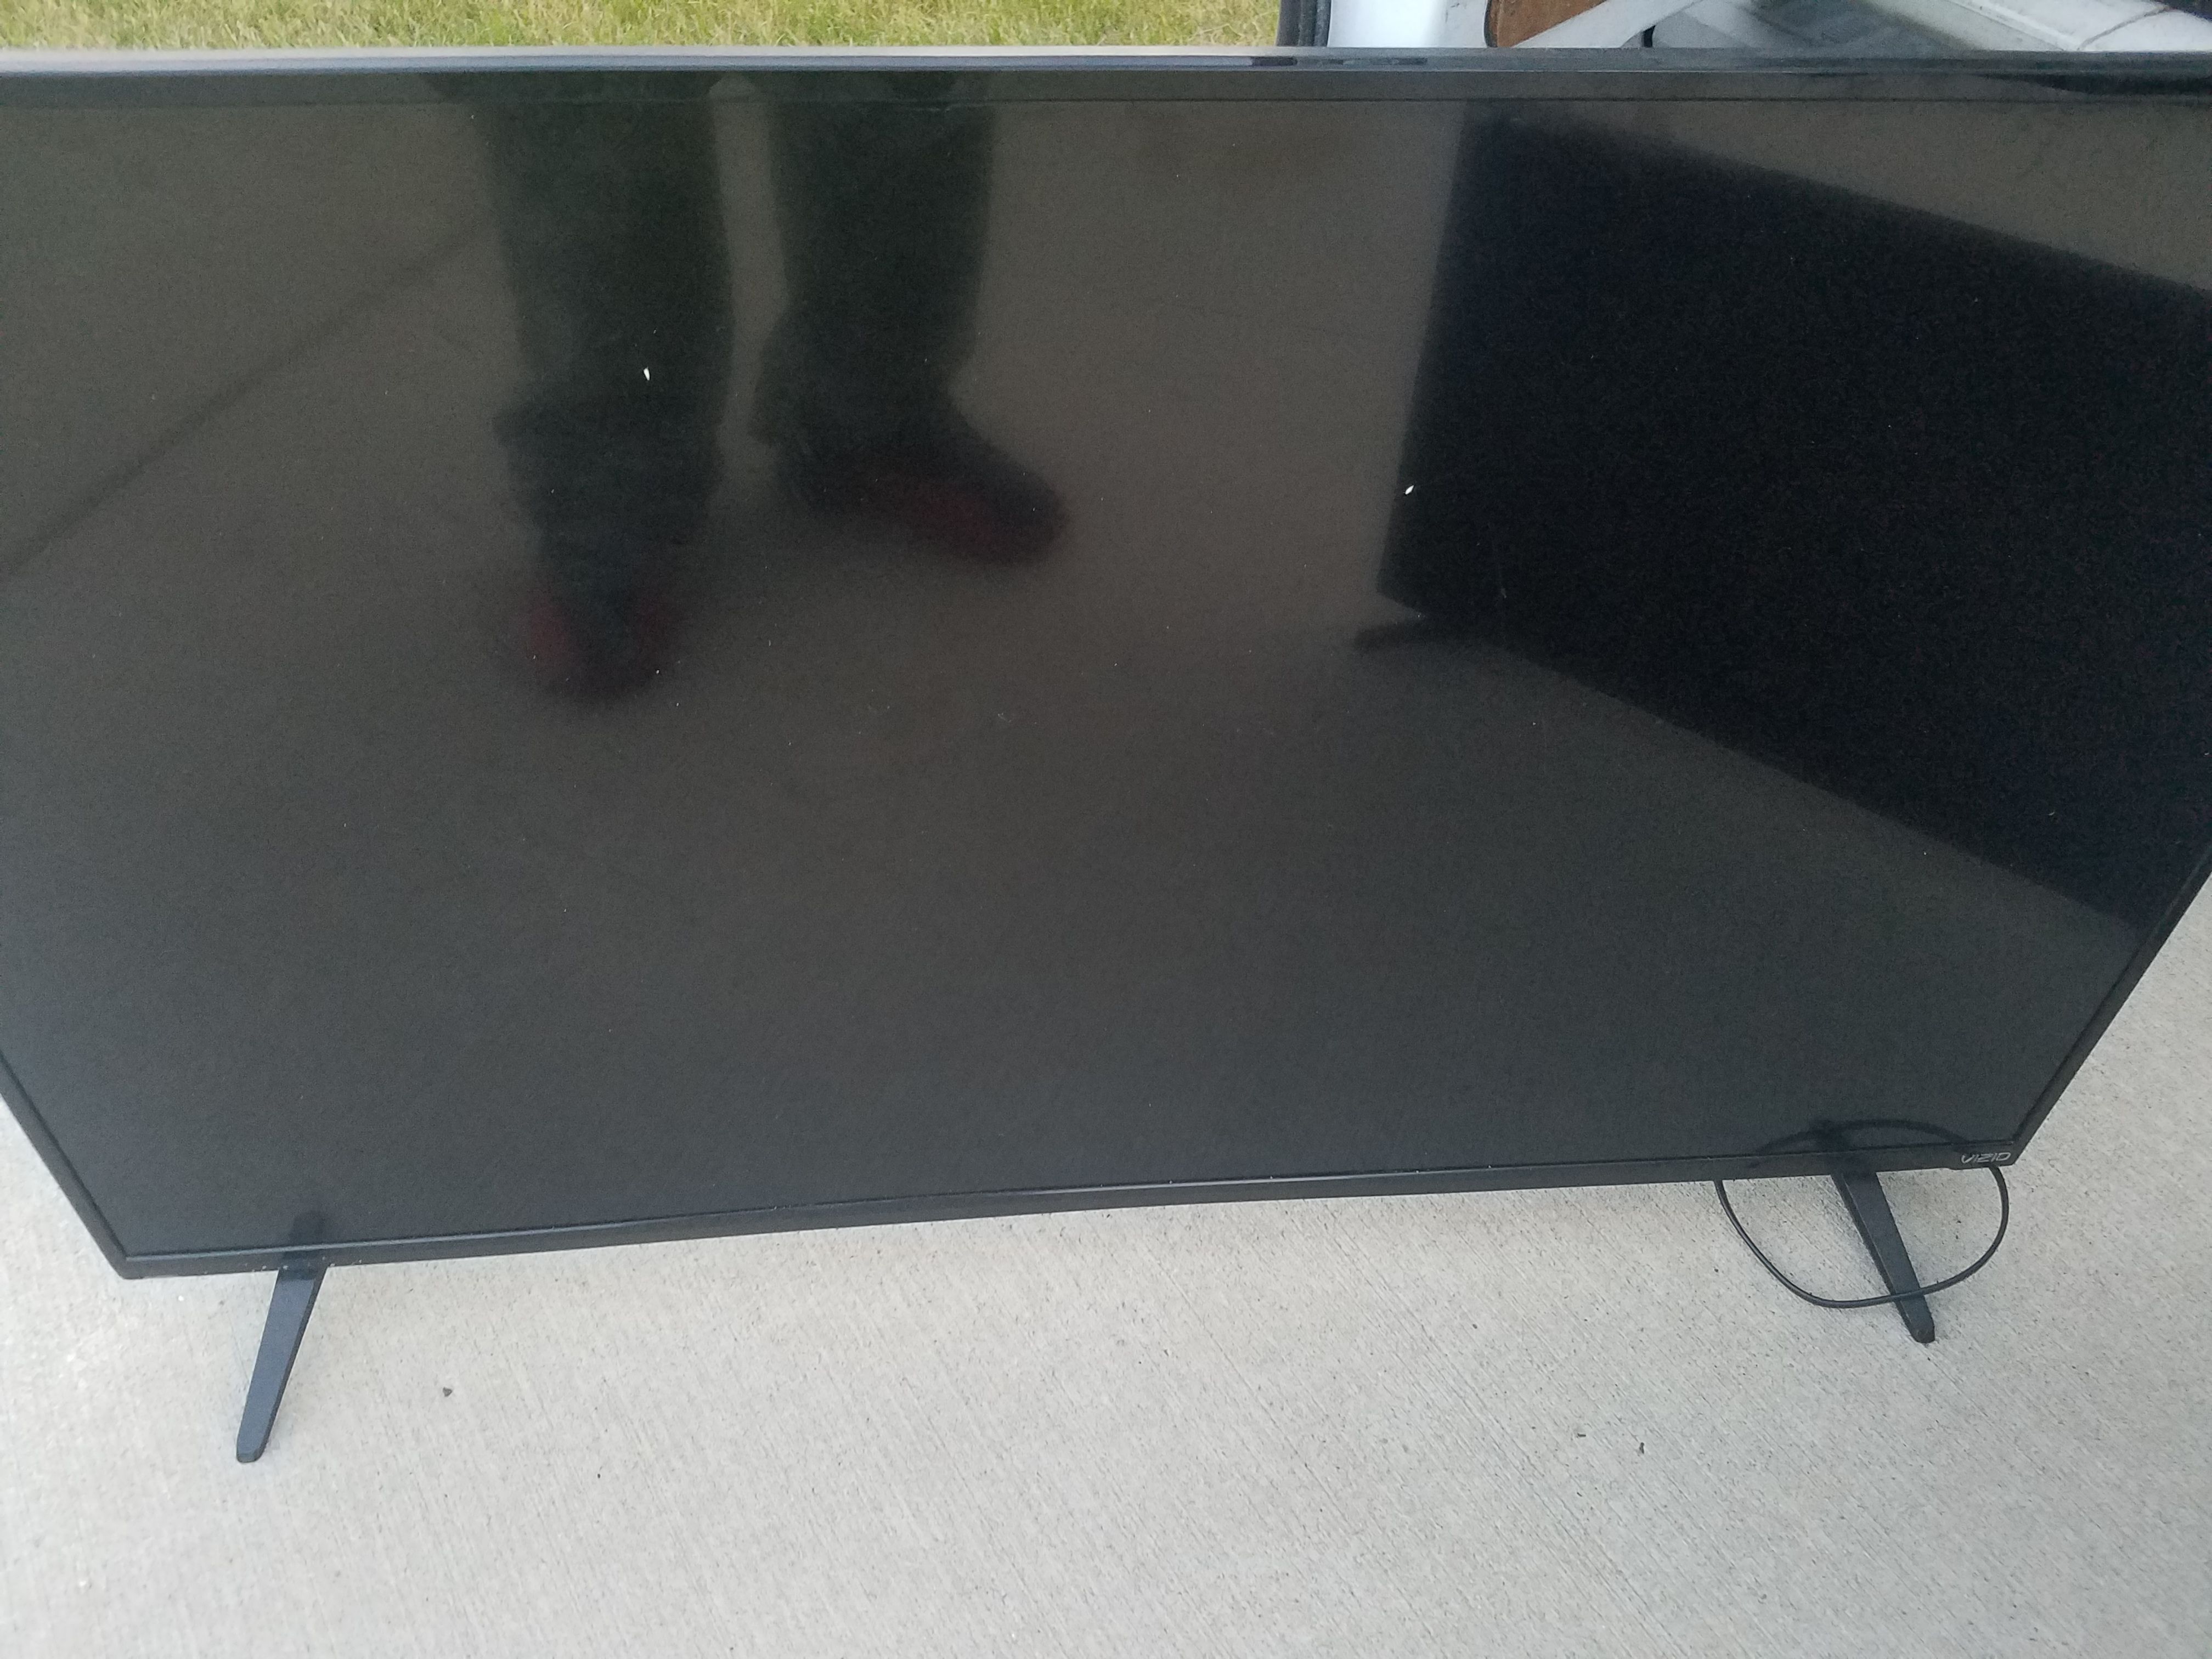 55 inch vizio smart tv 4k